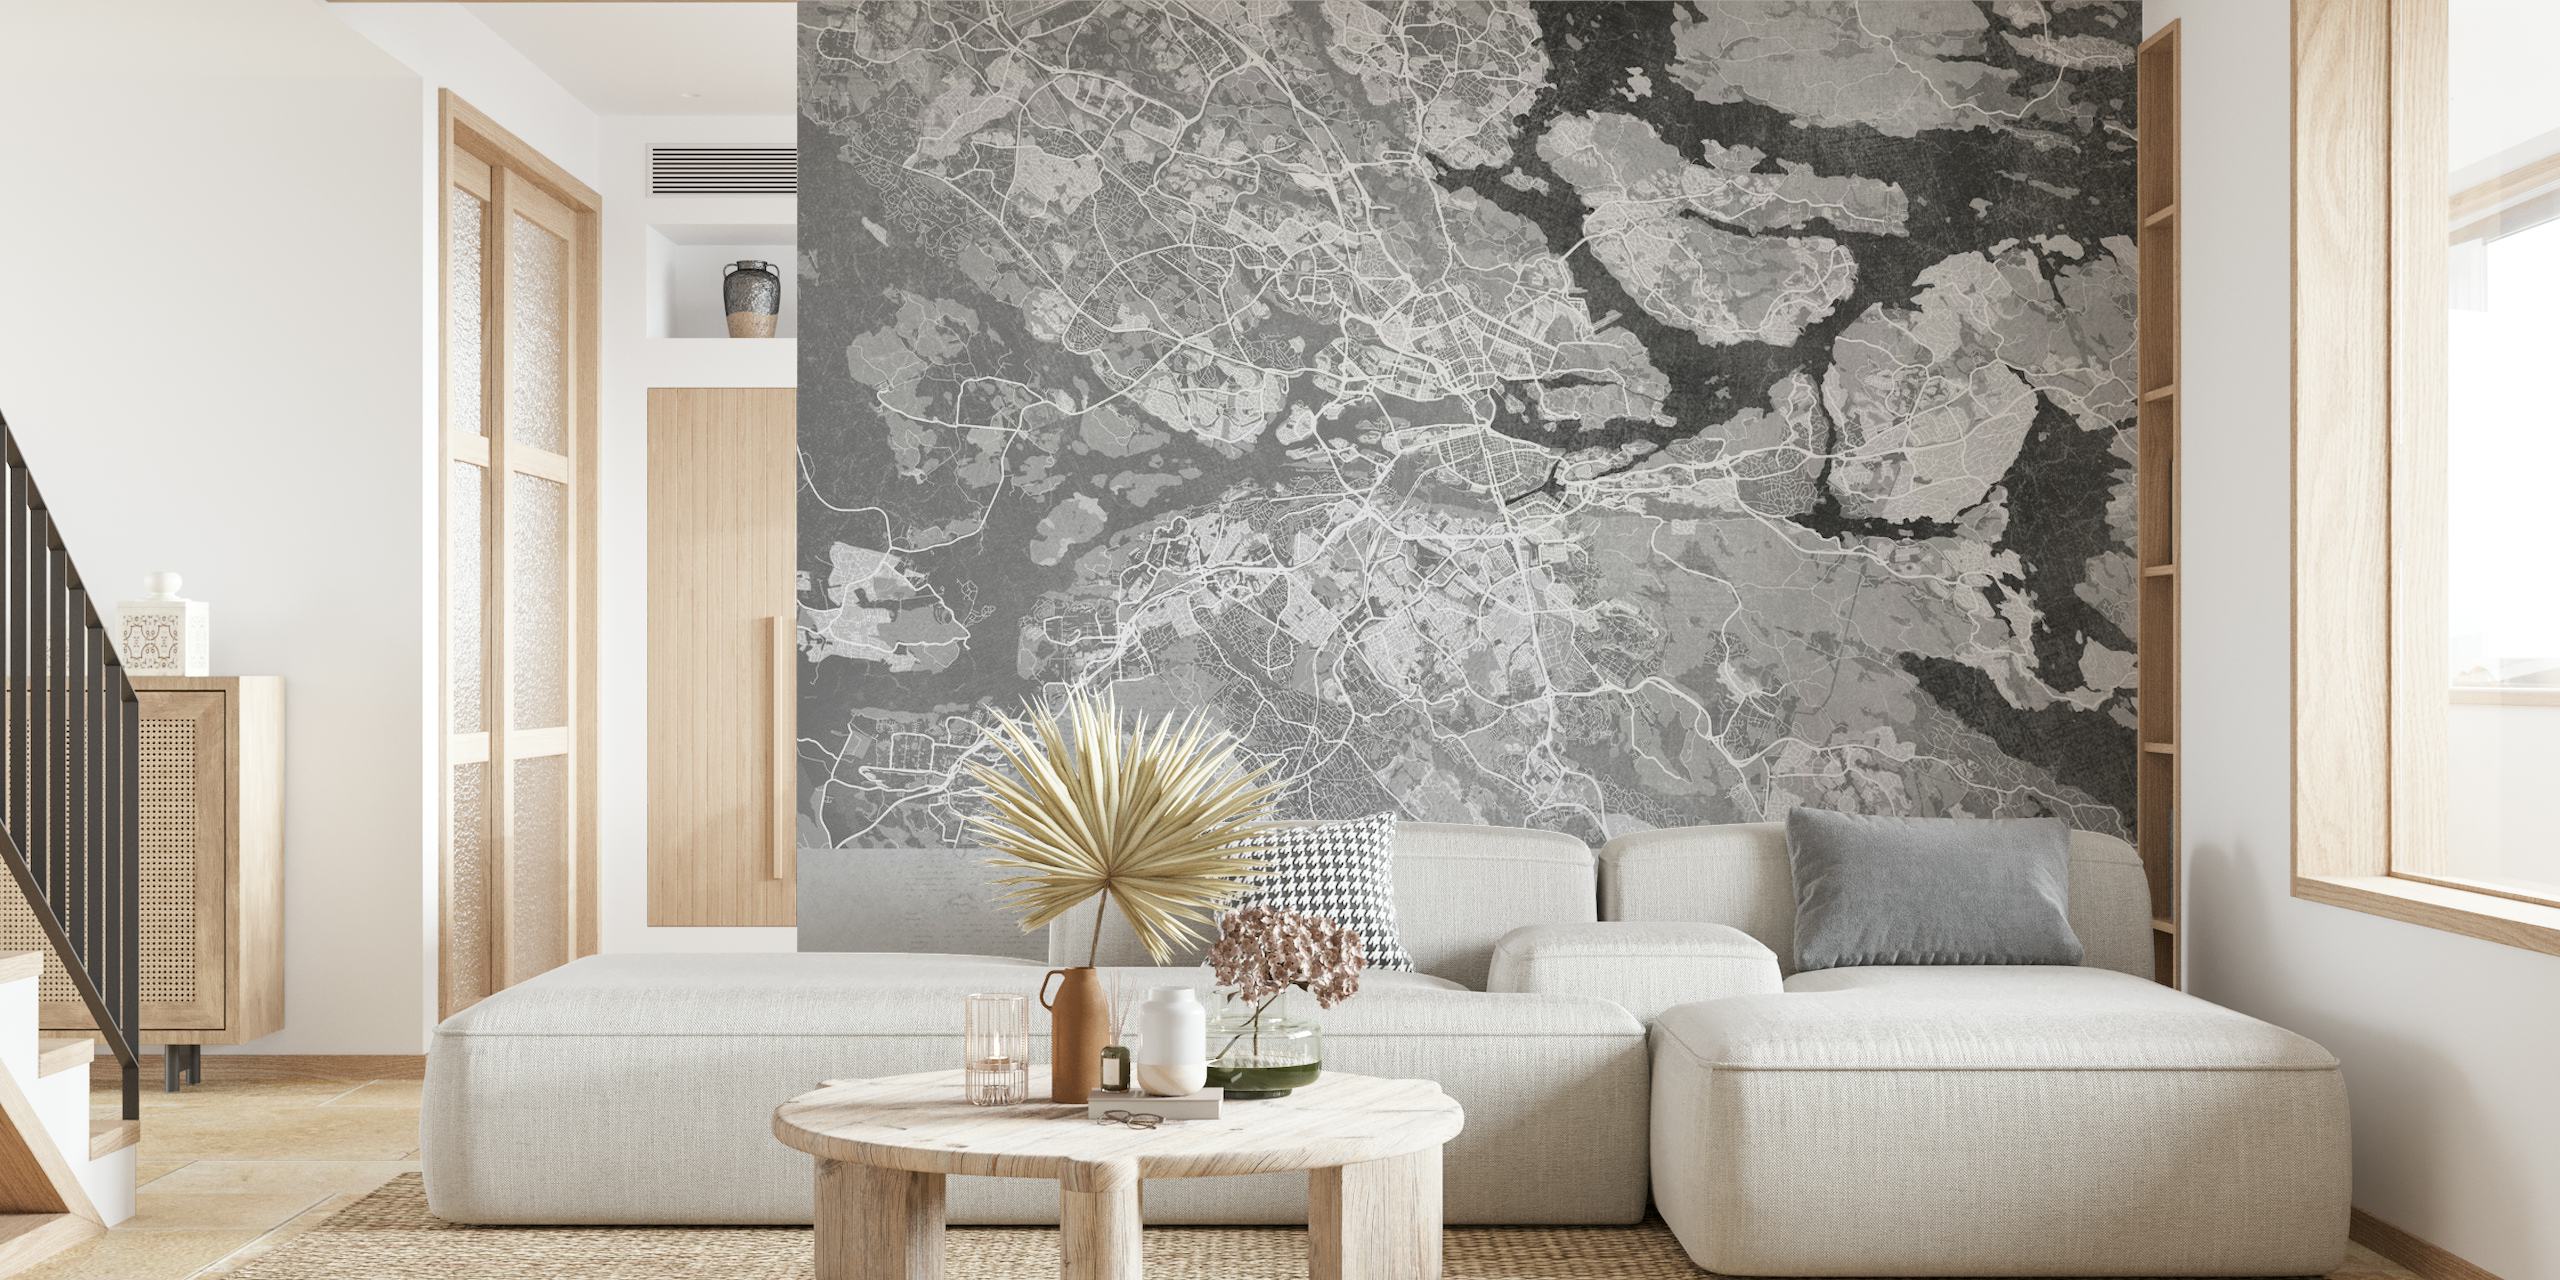 Fototapete Stockholm graue karte im vintage-stil für die inneneinrichtung